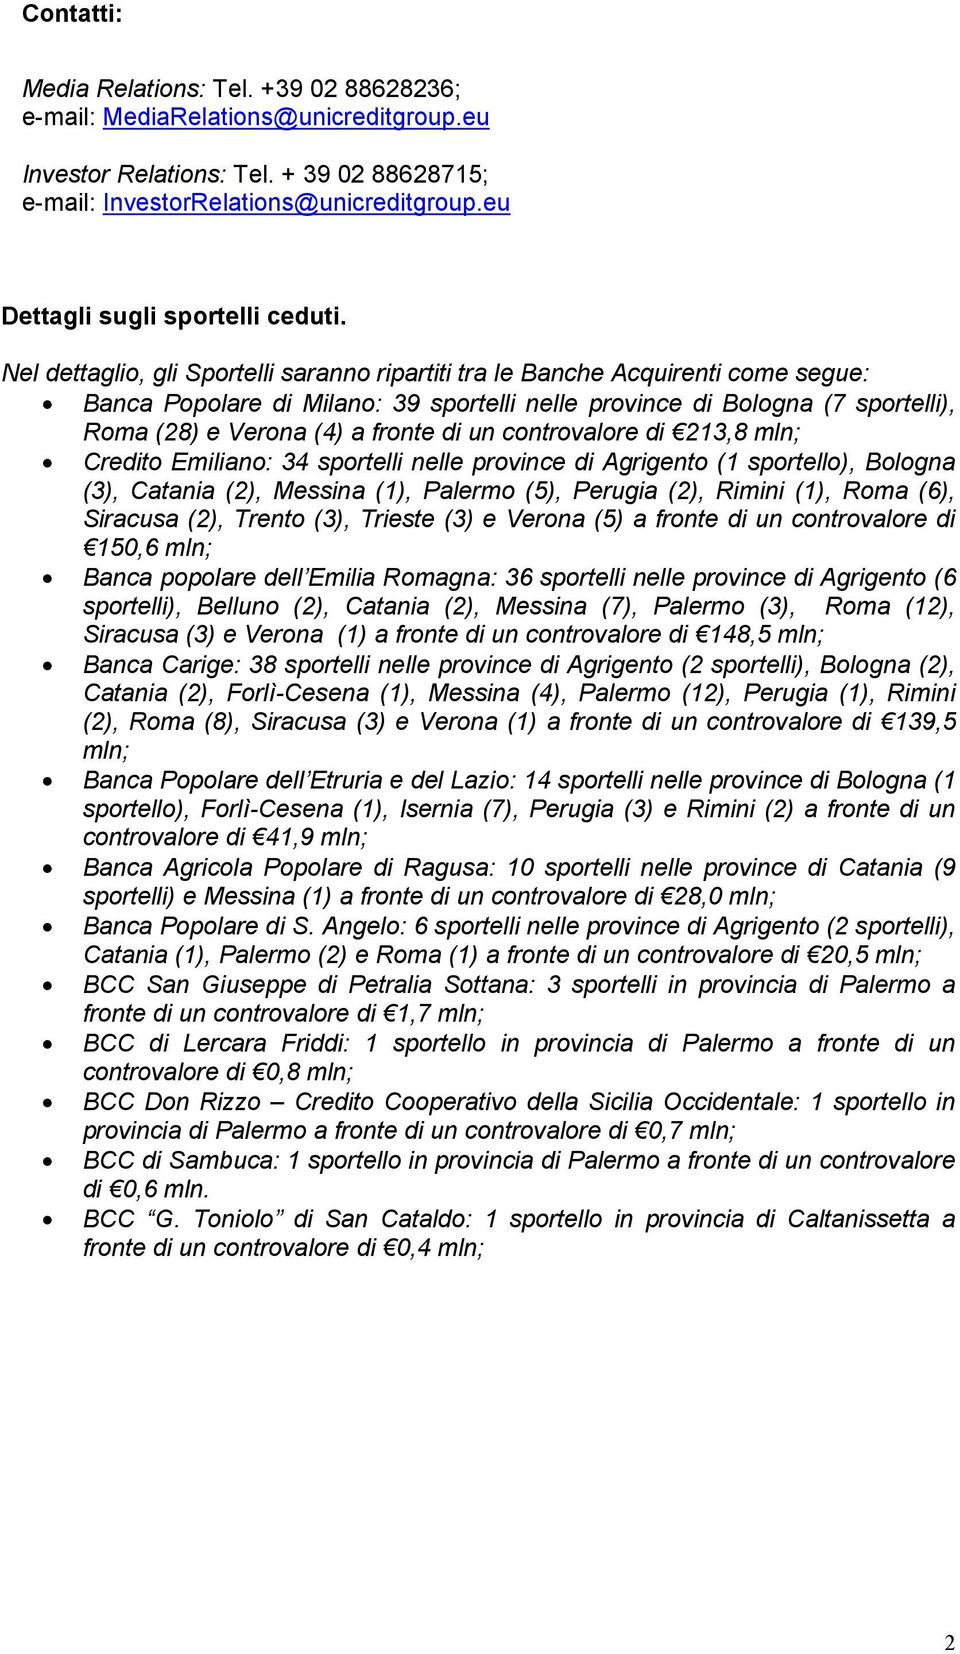 Nel dettaglio, gli Sportelli saranno ripartiti tra le Banche Acquirenti come segue: Banca Popolare di Milano: 39 sportelli nelle province di Bologna (7 sportelli), Roma (28) e Verona (4) a fronte di